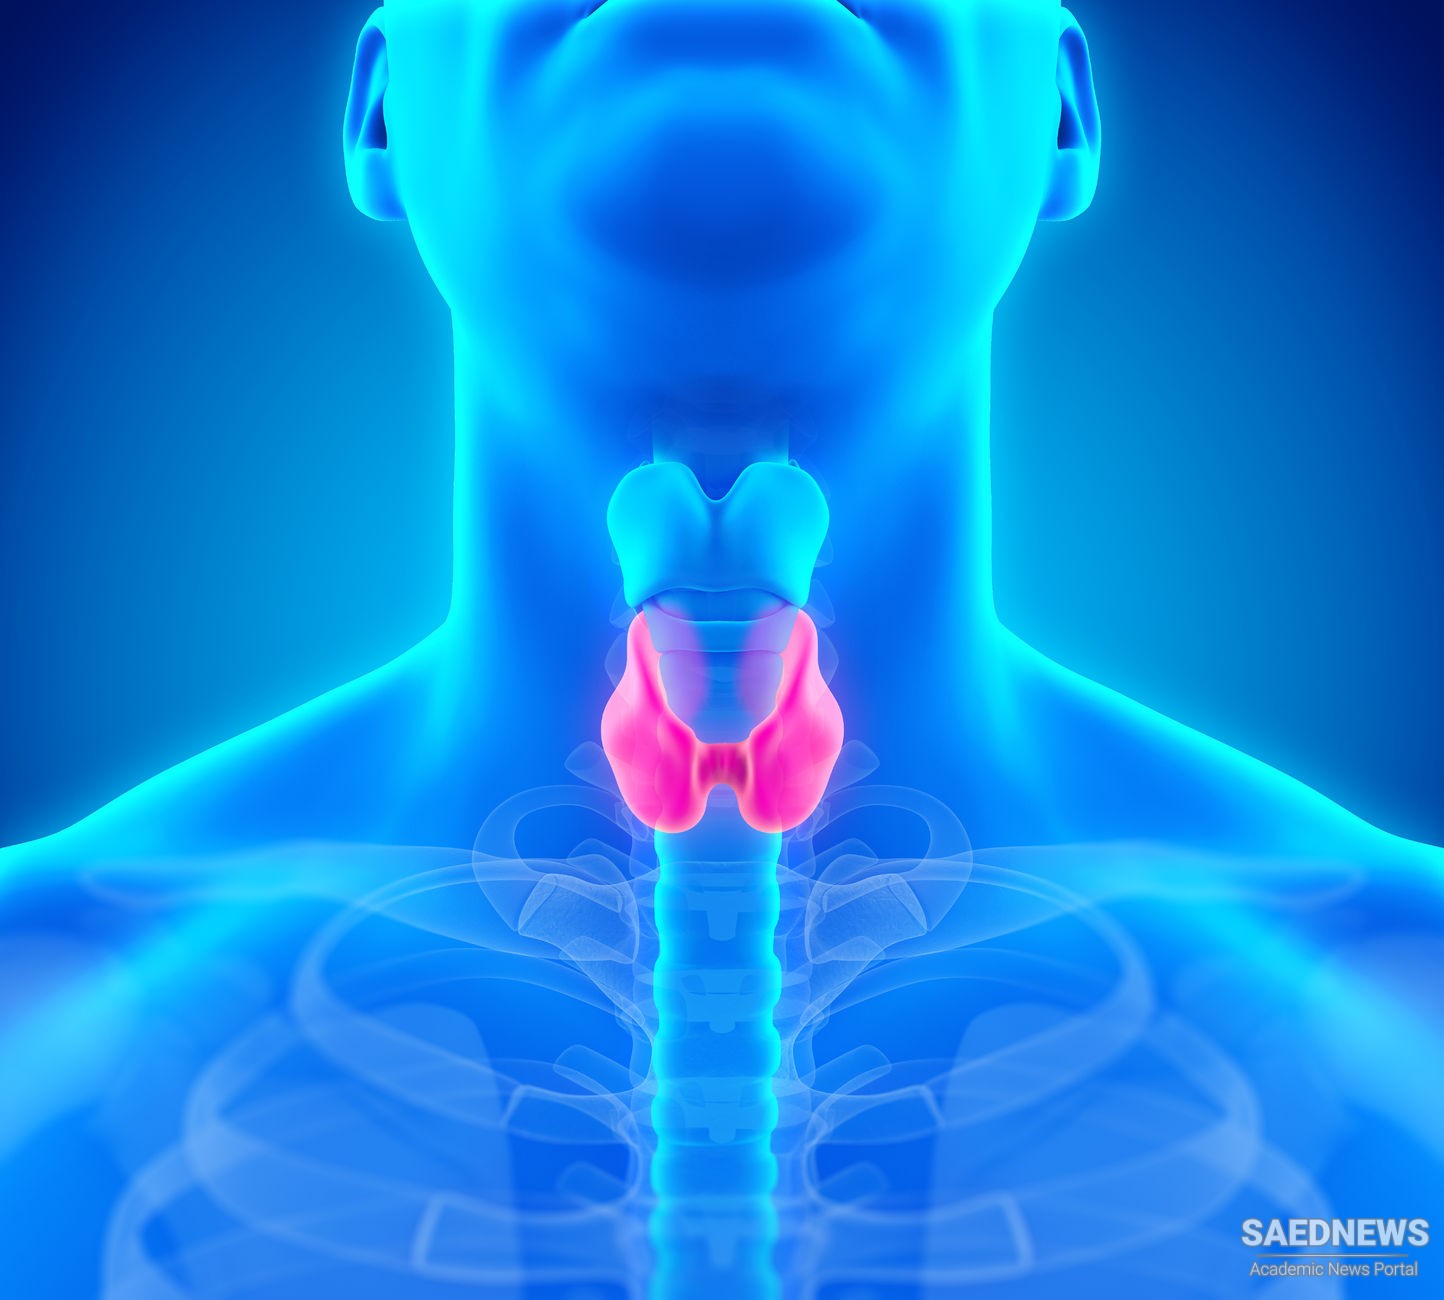 थायराइड के लक्षण, कारण, घरेलू उपचार और परहेज (Home Remedies for Thyroid Hypothyroidism)